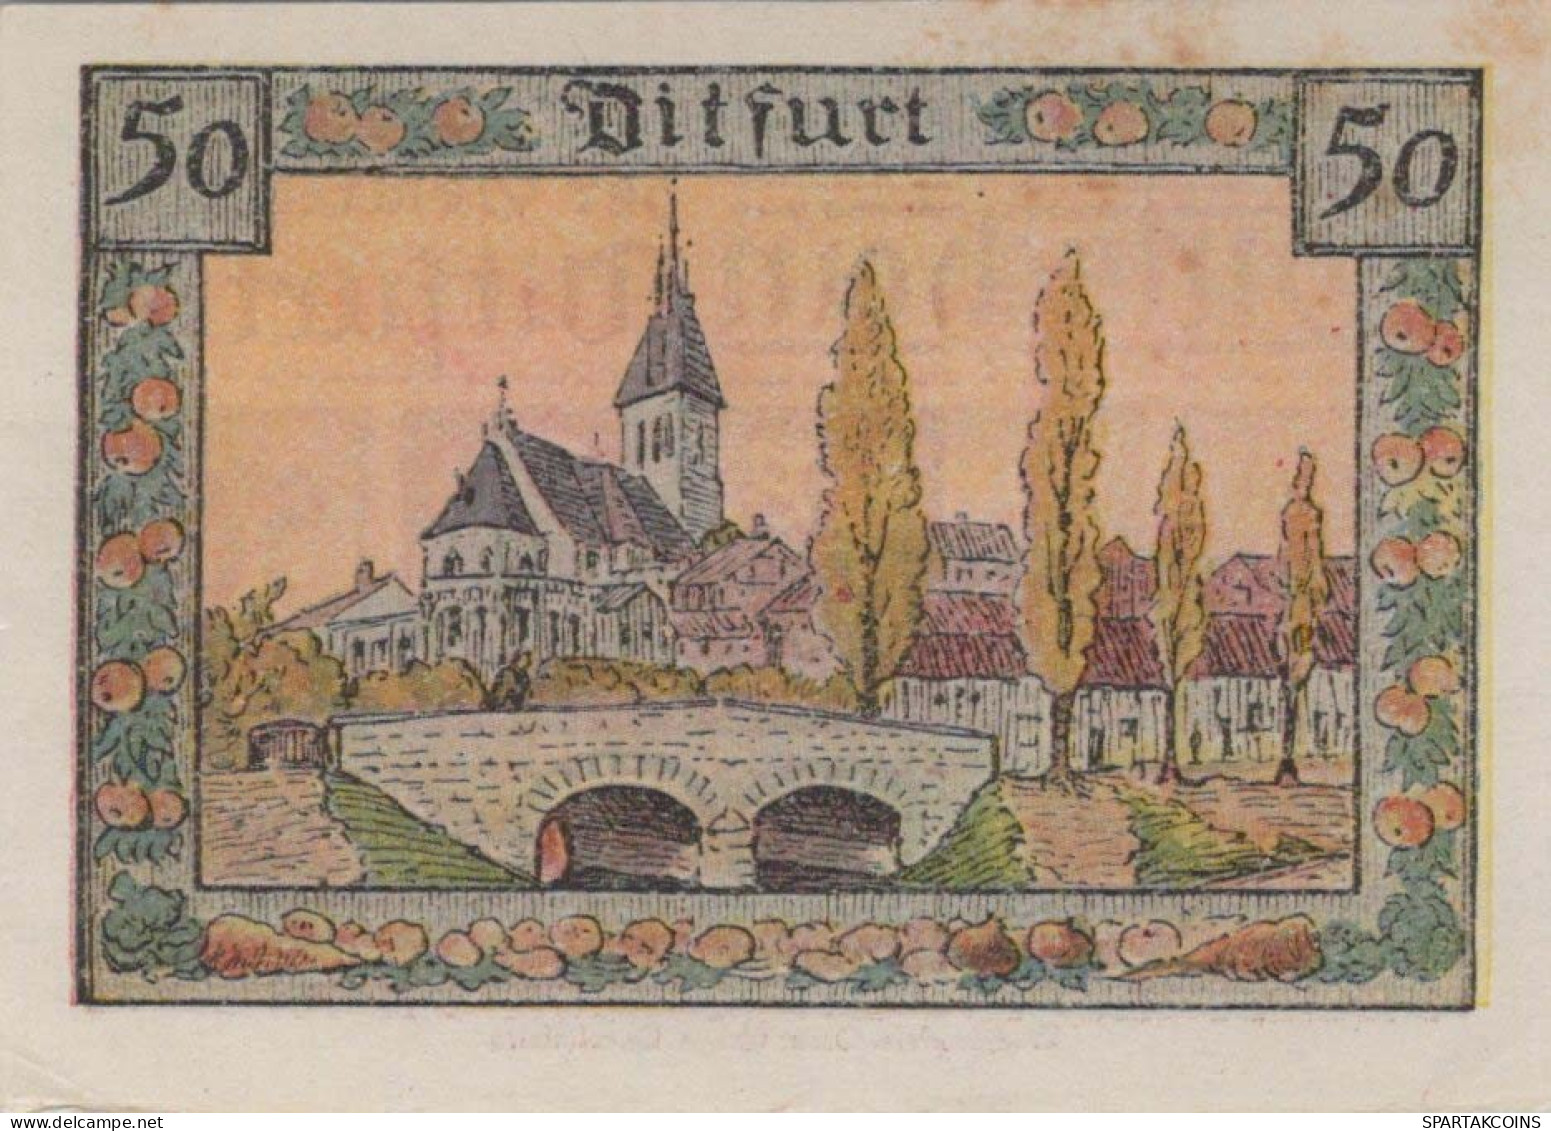 50 PFENNIG 1921 Stadt DITFURT Saxony UNC DEUTSCHLAND Notgeld Banknote #PA466 - Lokale Ausgaben